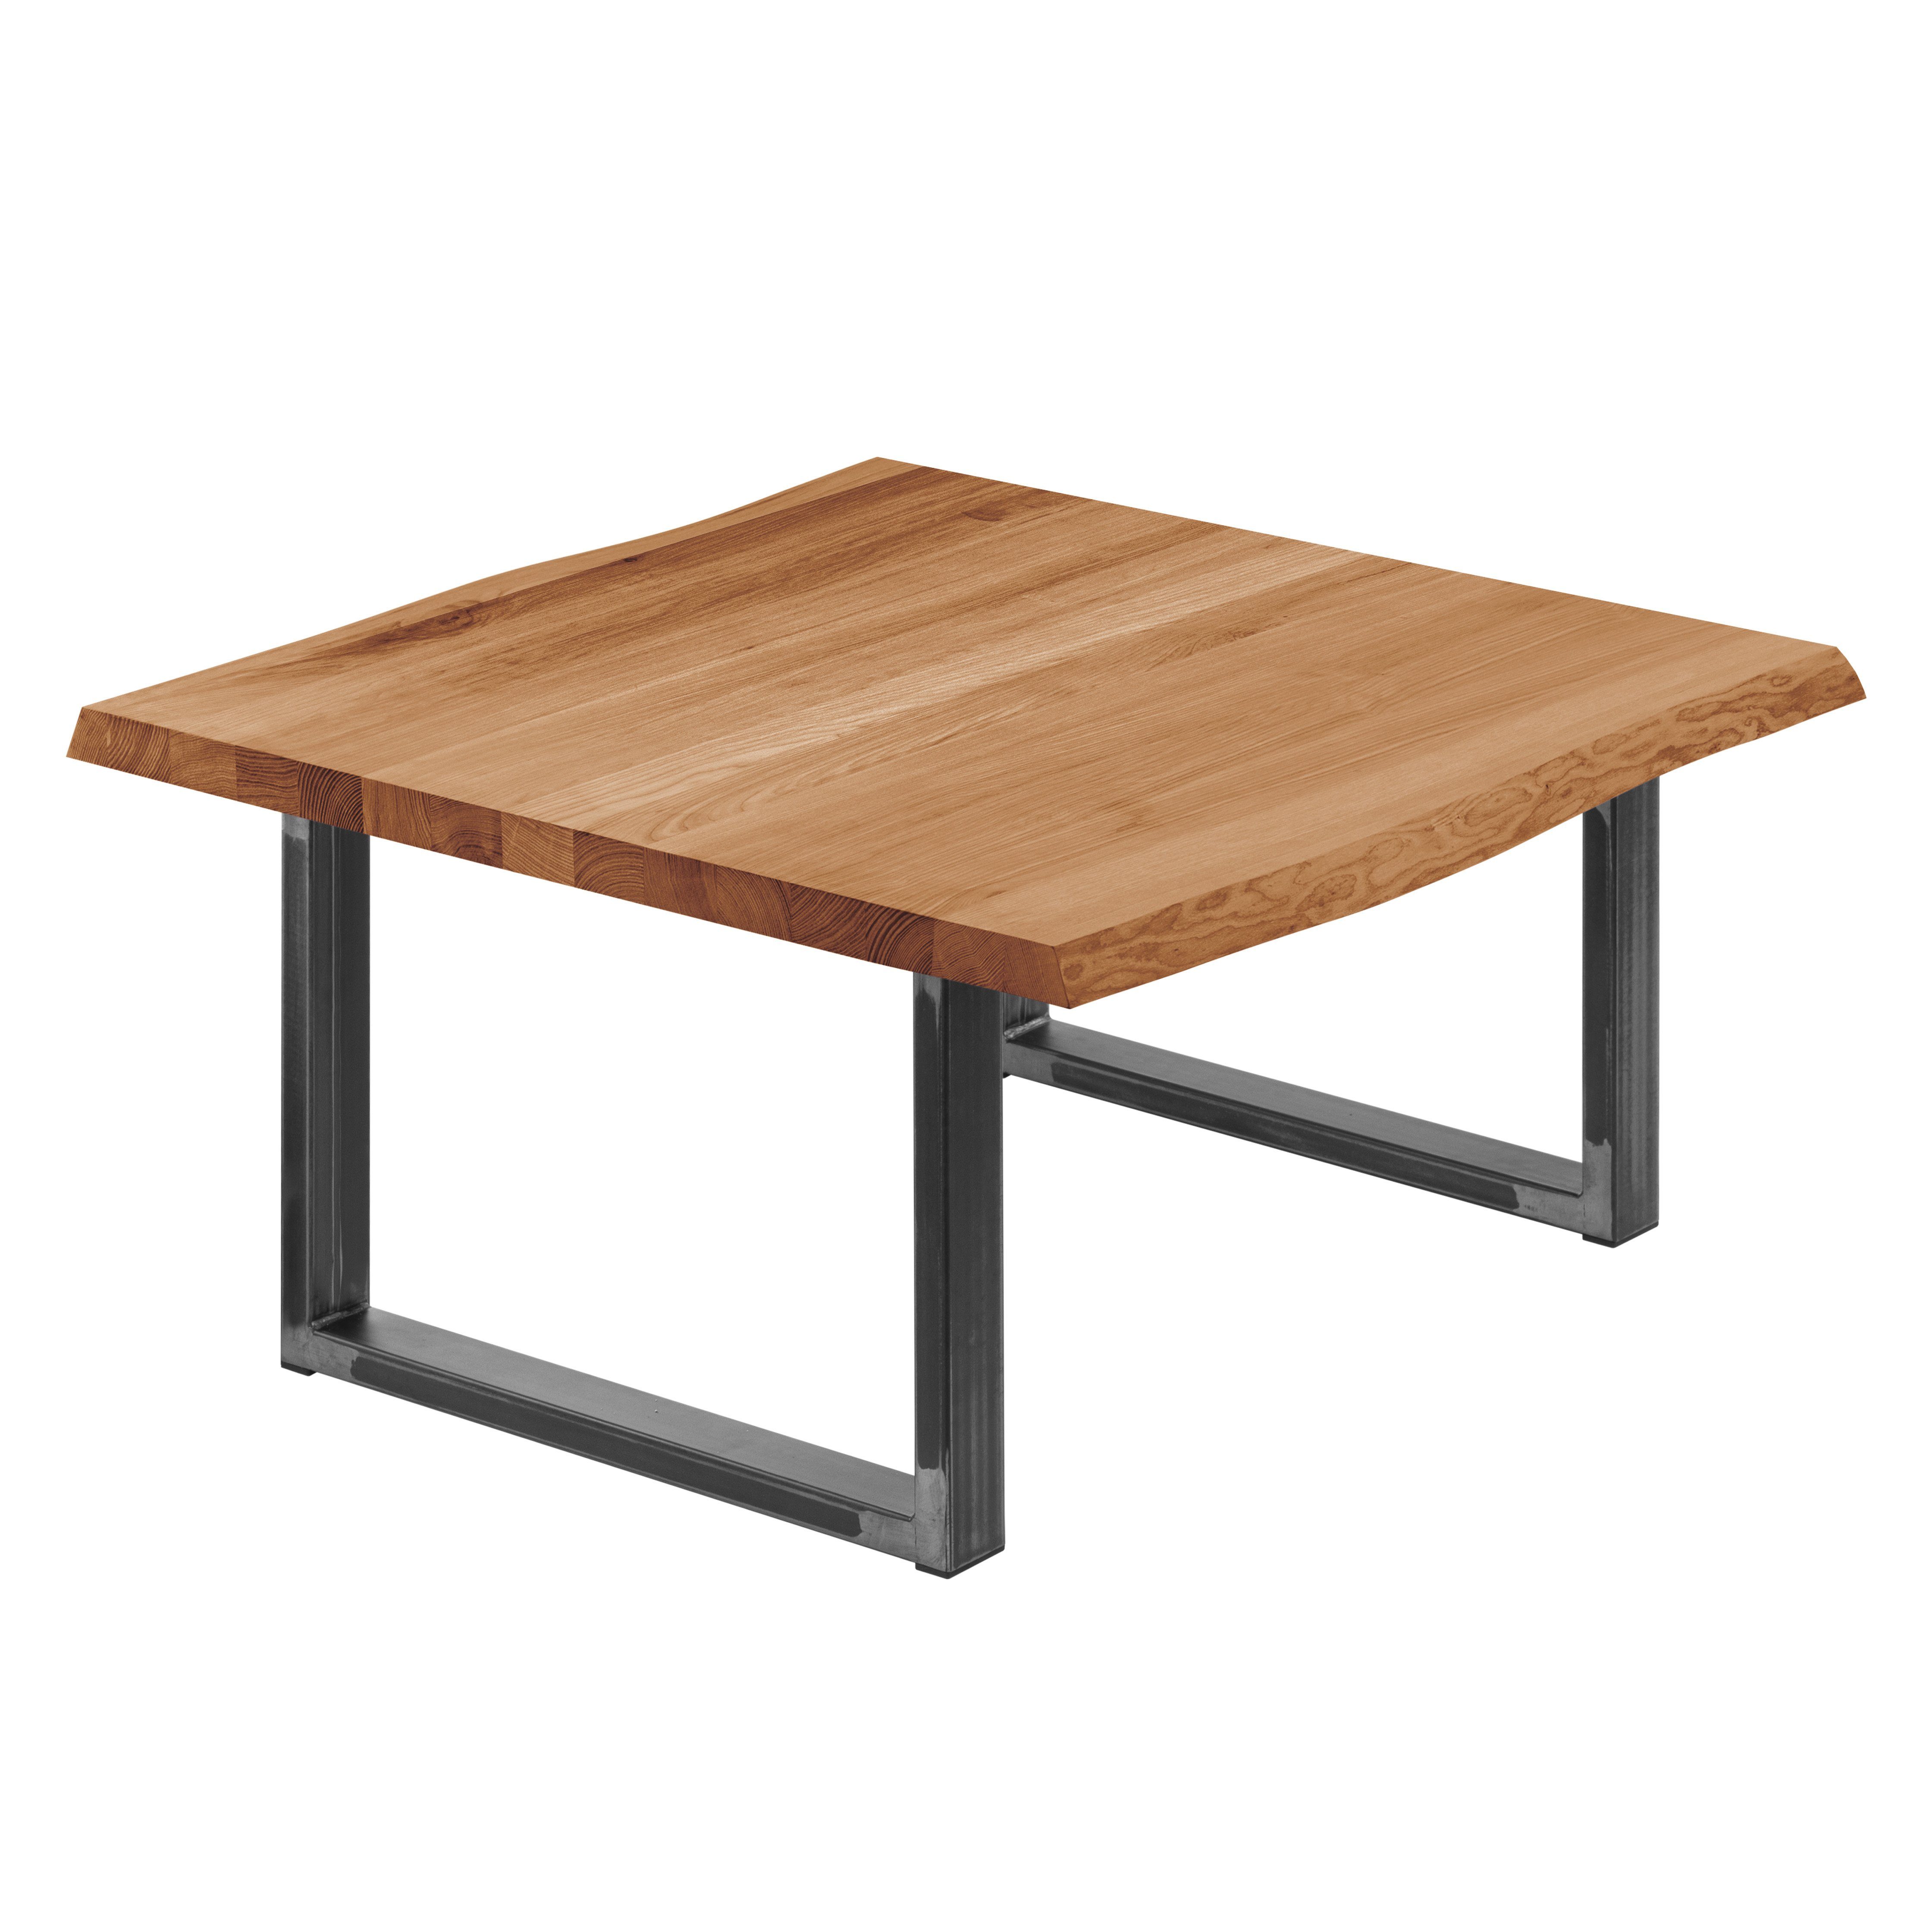 | Baumkantentisch Massivholz massiv inkl. Metallgestell Rohstahl (1 mit Tisch), Klarlack Loft Manufaktur Baumkante LAMO Esstisch Dunkel